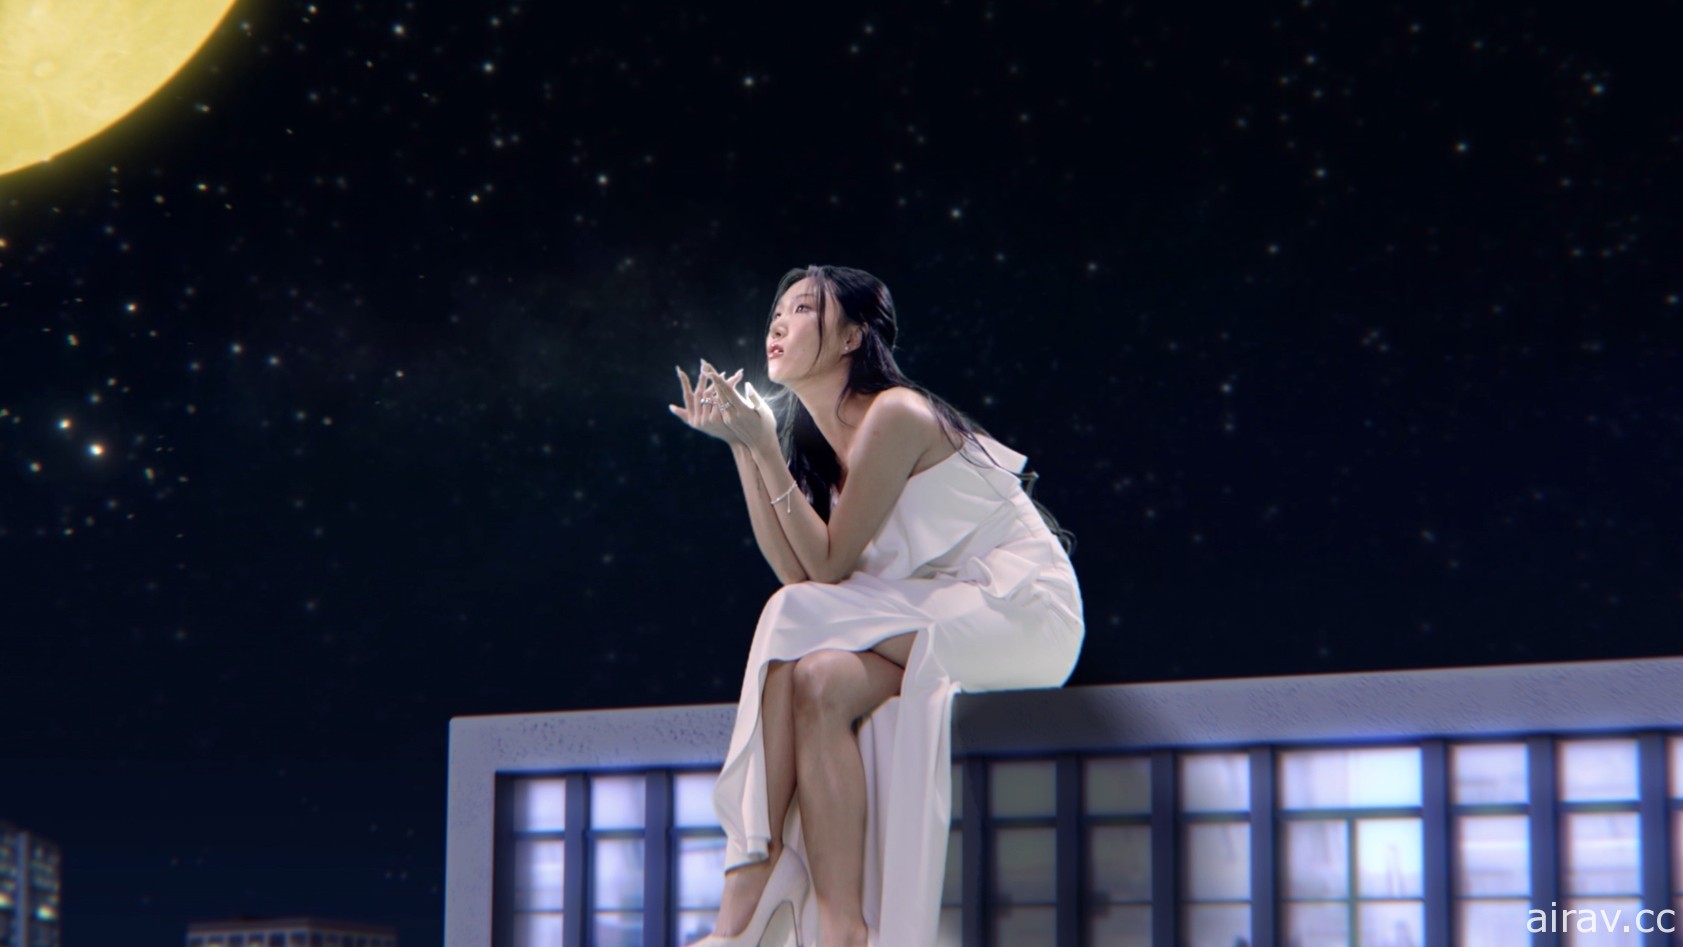 韩国歌手华莎献唱《模拟市民 4》专属歌曲“Play With Life” 期望为玩家带来正能量